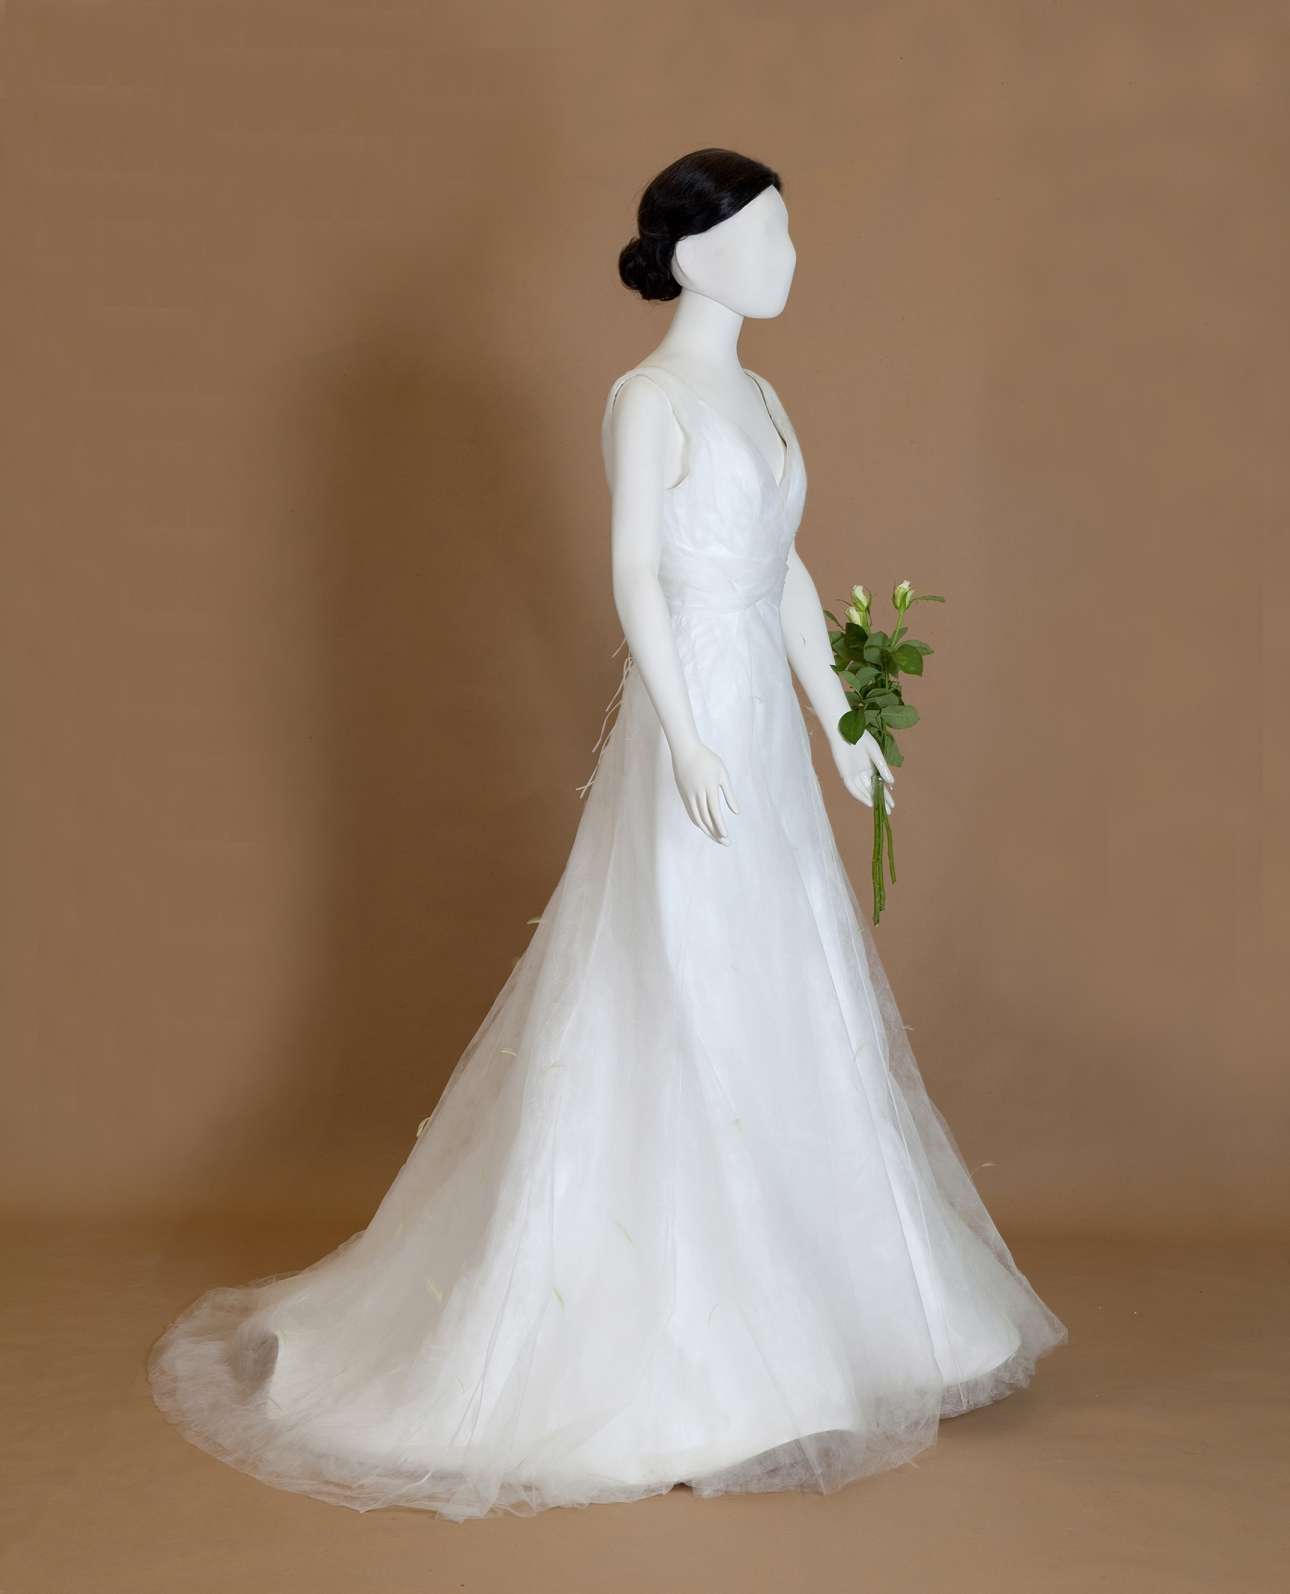 Νυφικό με ουρά από λευκό tyvek και συνθετικό voile, διακοσμημένο με φιστικί φτερά, δημιουργία της Etienne Brunel, Παρίσι. Φορέθηκε από την Ελένη Τσίτουρα στον γάμο της με τον Γιώργο Μάλλιο στον Ι.Ν. Παναγίας του Αη Γιωργιού στο Φηροστεφάνι Σαντορίνης, στις 28 Αυγούστου 2008. Δωρεά: Δημήτρης Τσίτουρας (Συλλογή ΠΛΙ)